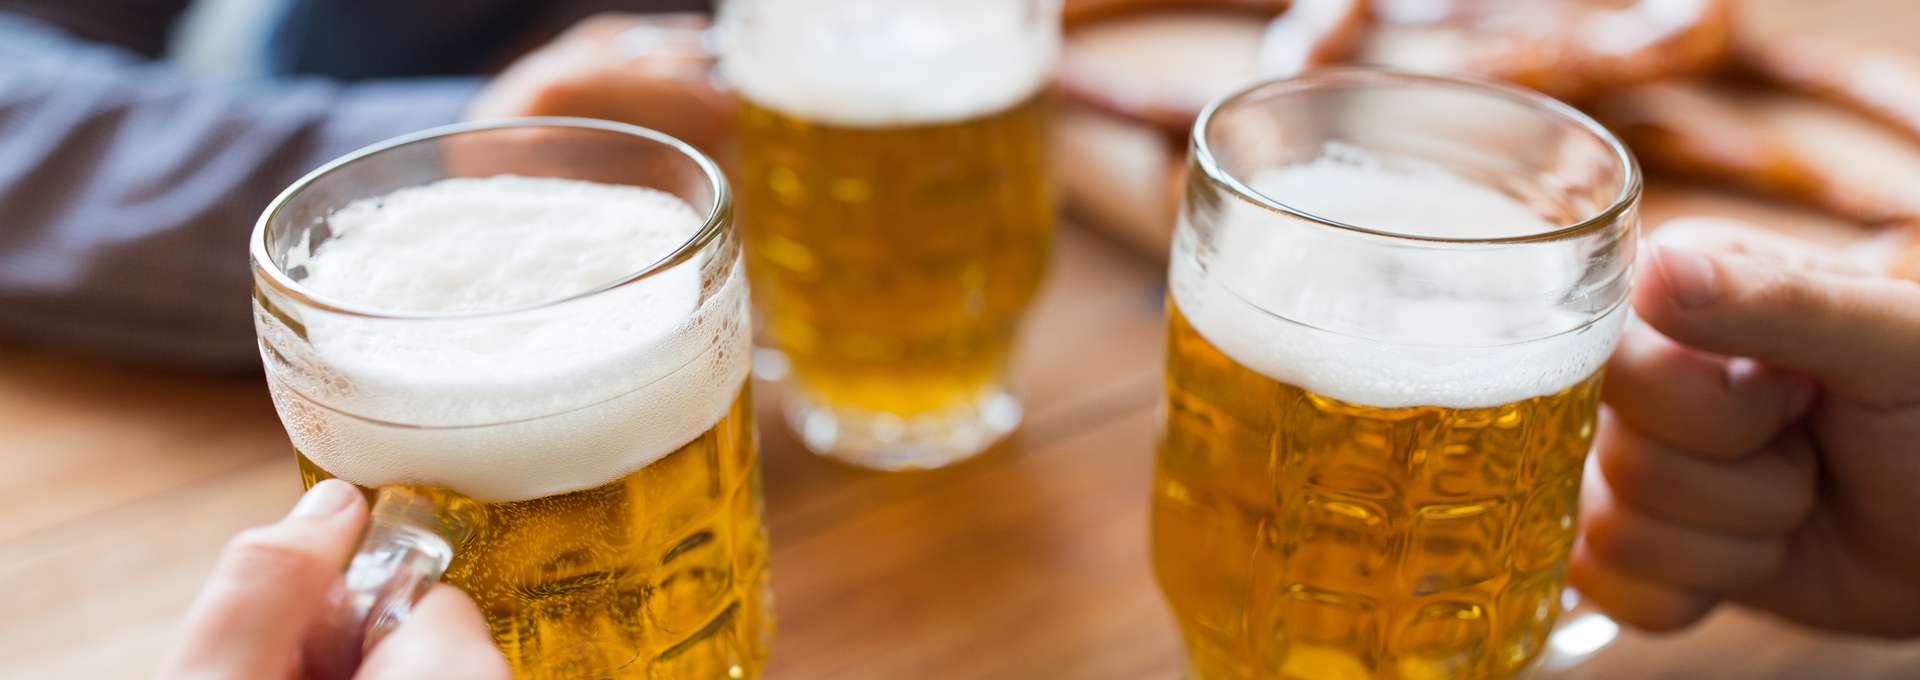 Händer med öl i glas på pub